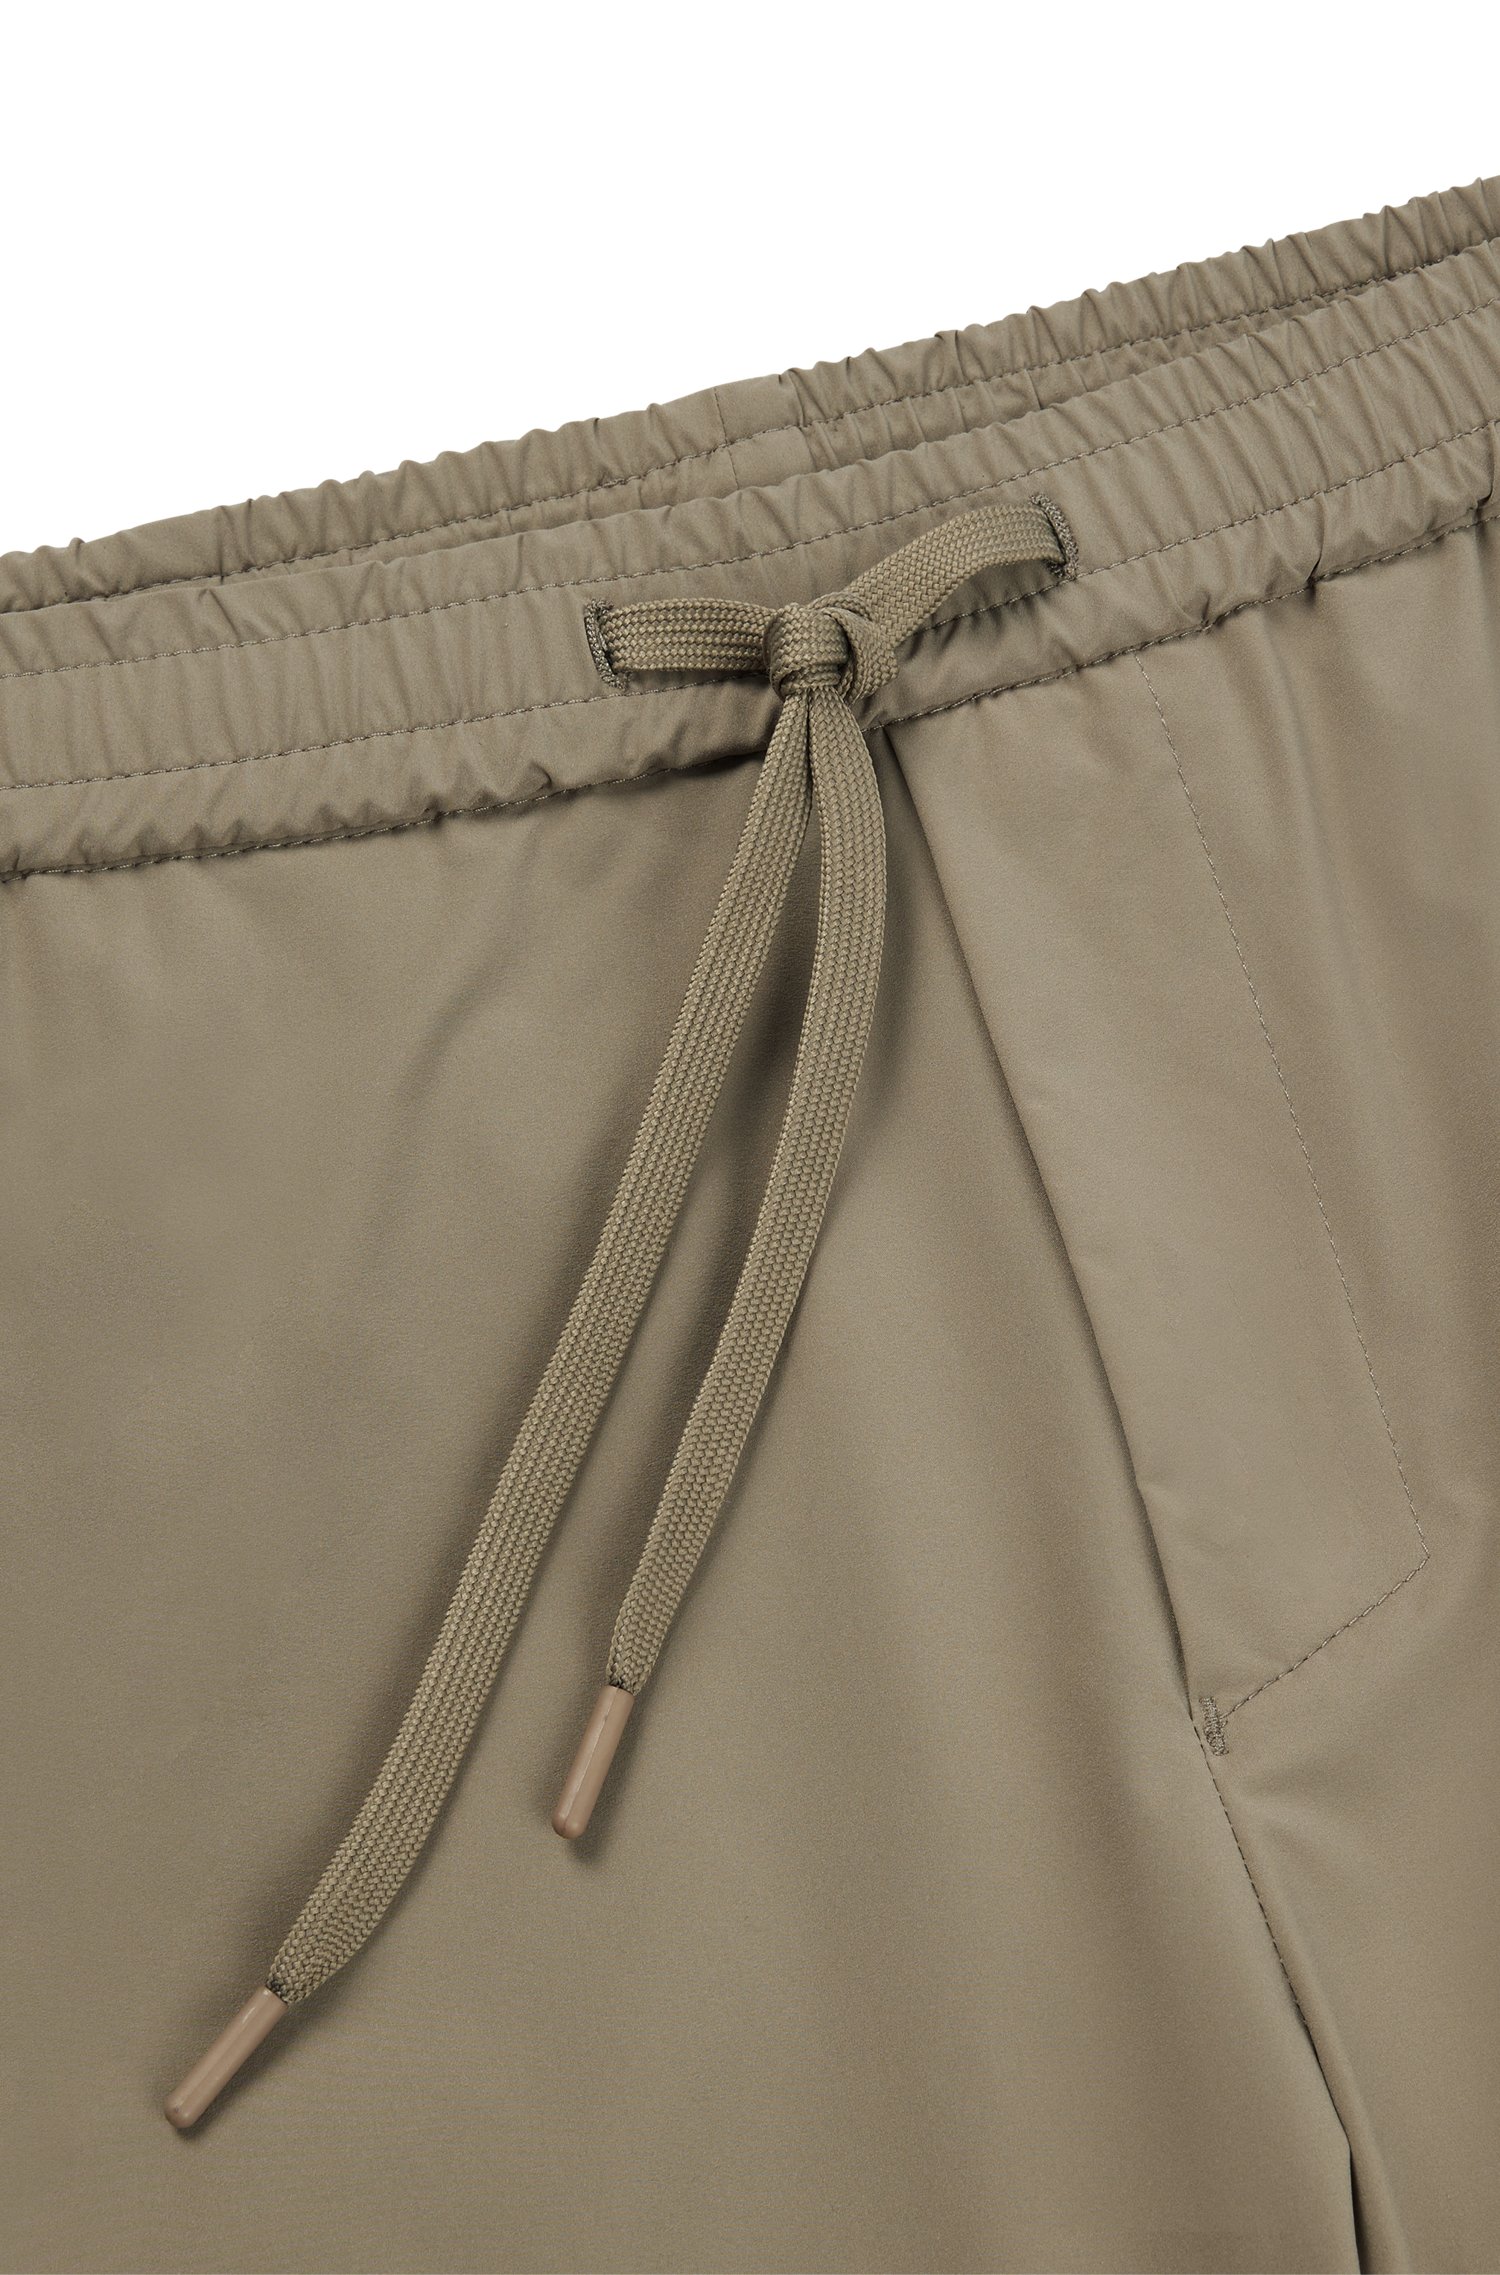 Shorts tapered fit de popelín planchado fácil y secado rápido